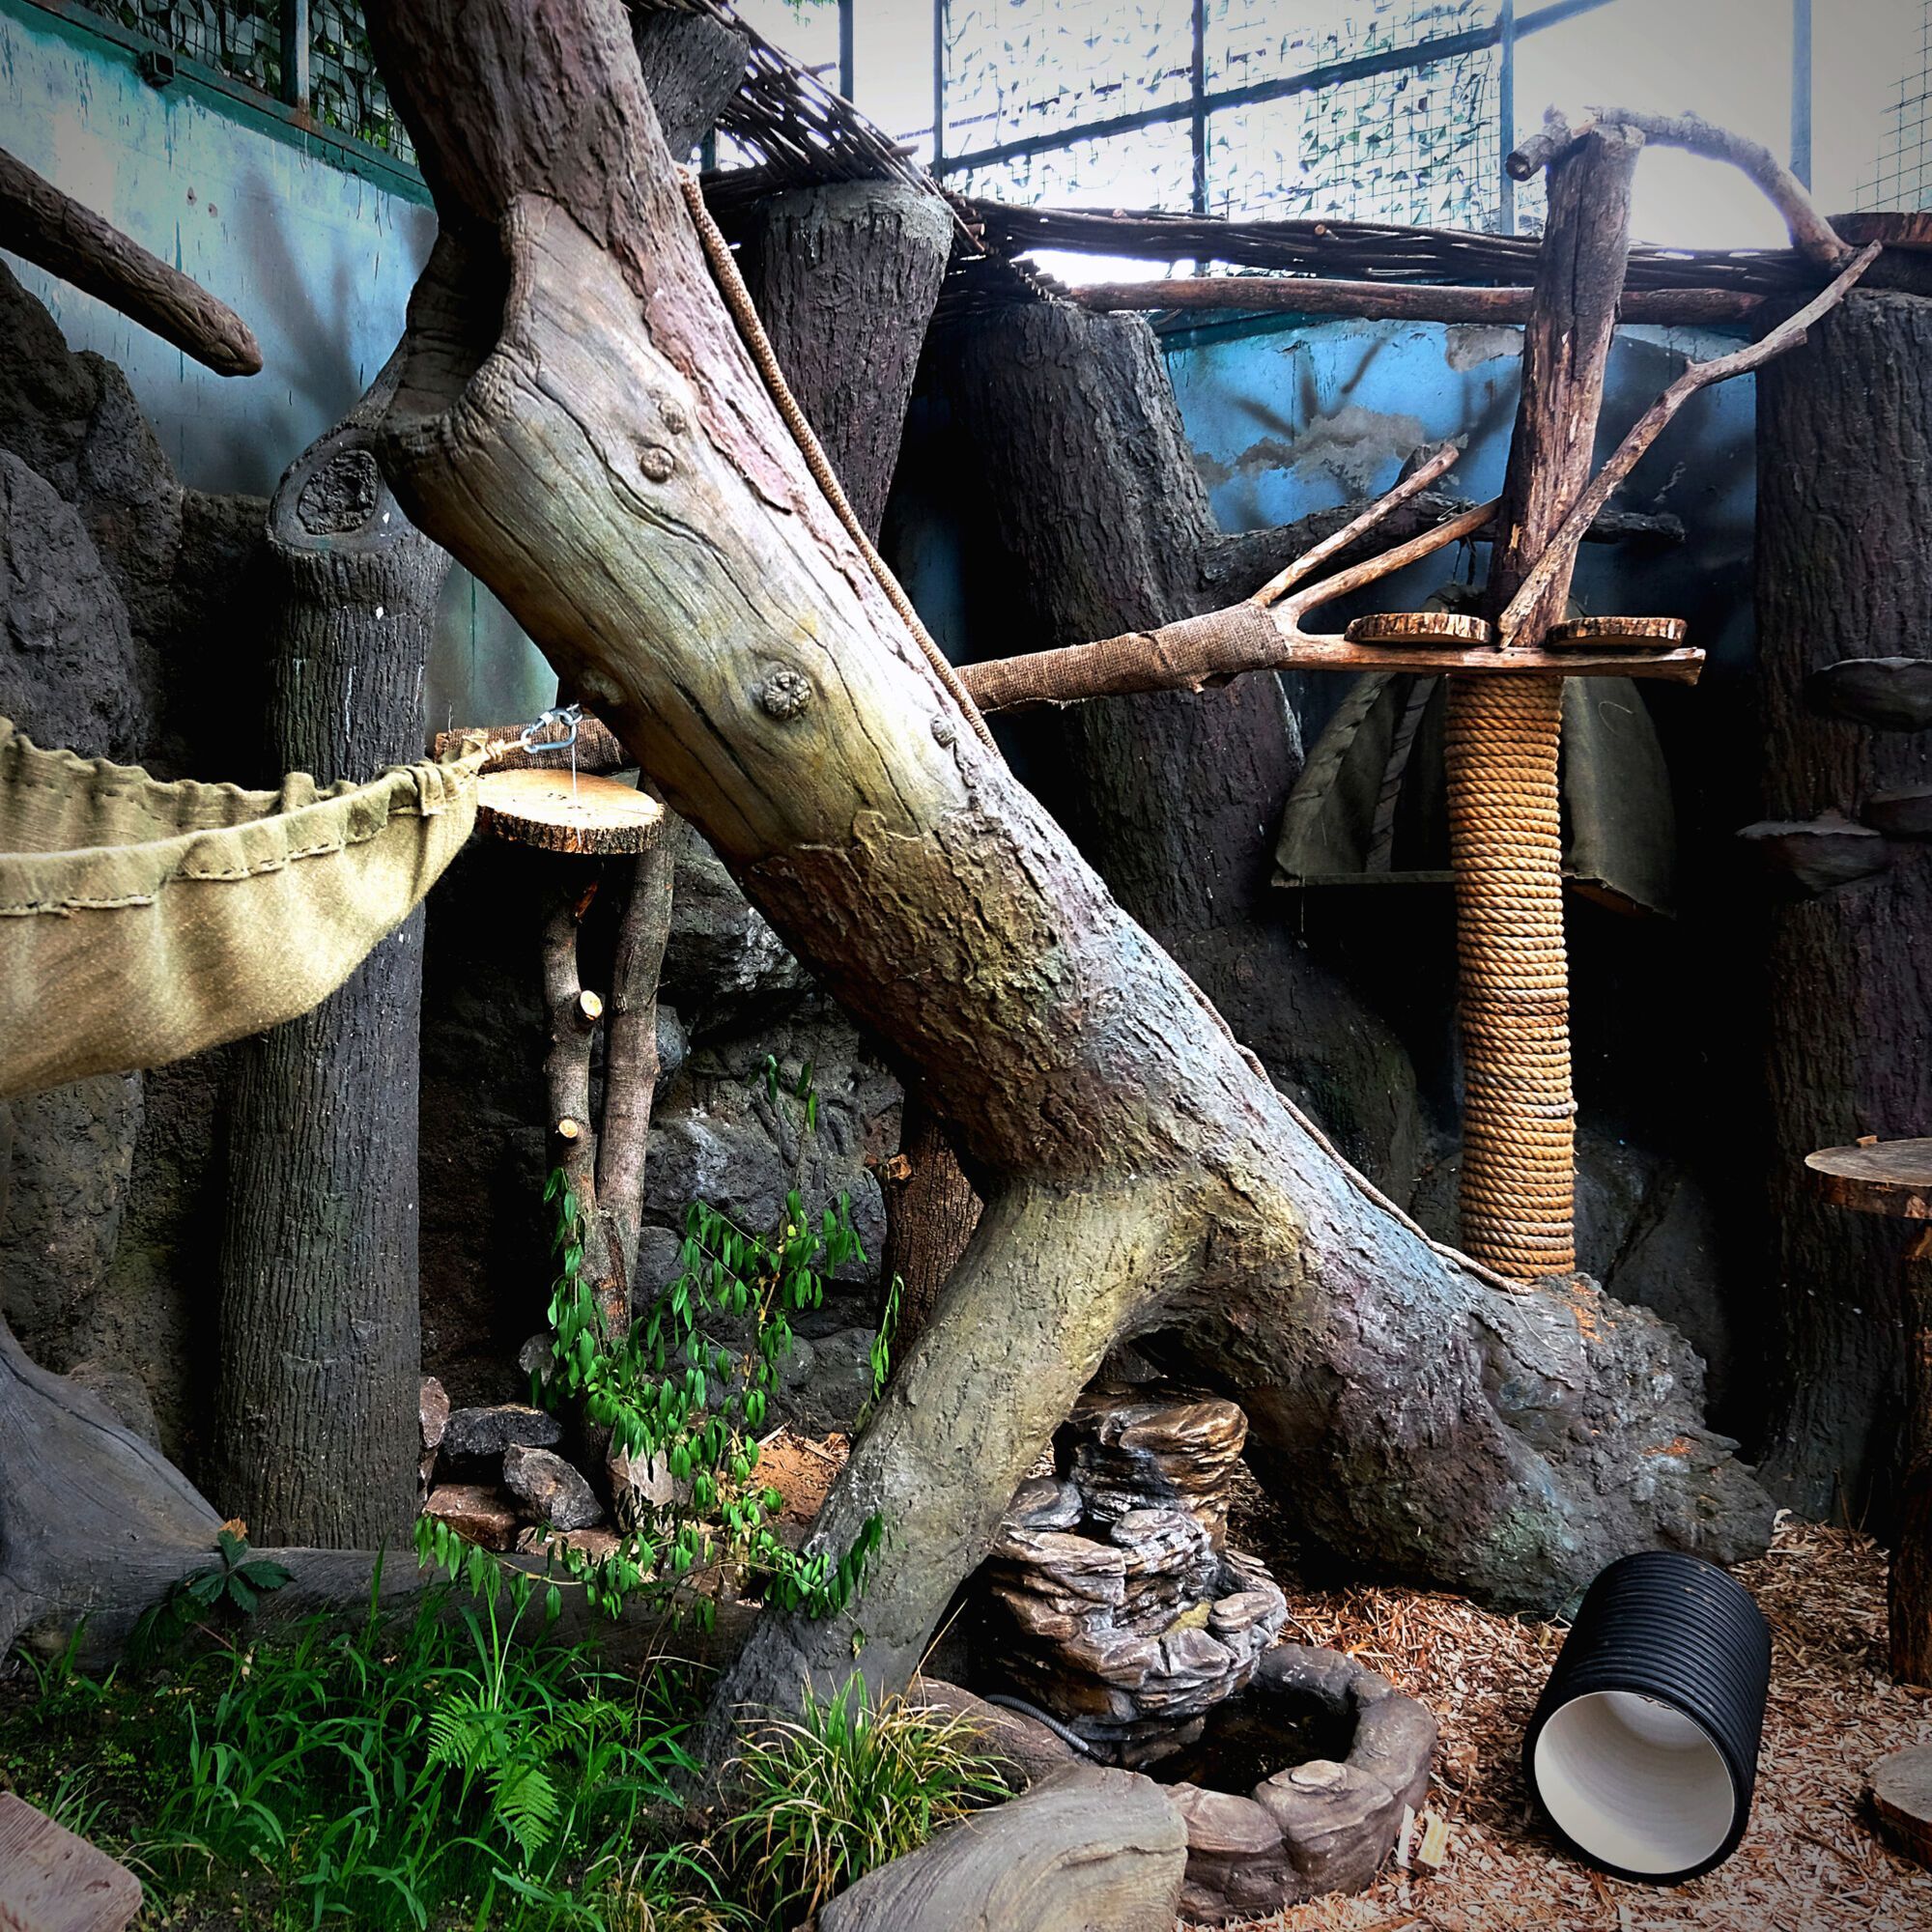 Пострадали от бесчеловечной жестокости: в зоопарке Киева спасенных каракалов переселили в летний дом. Фото и видео